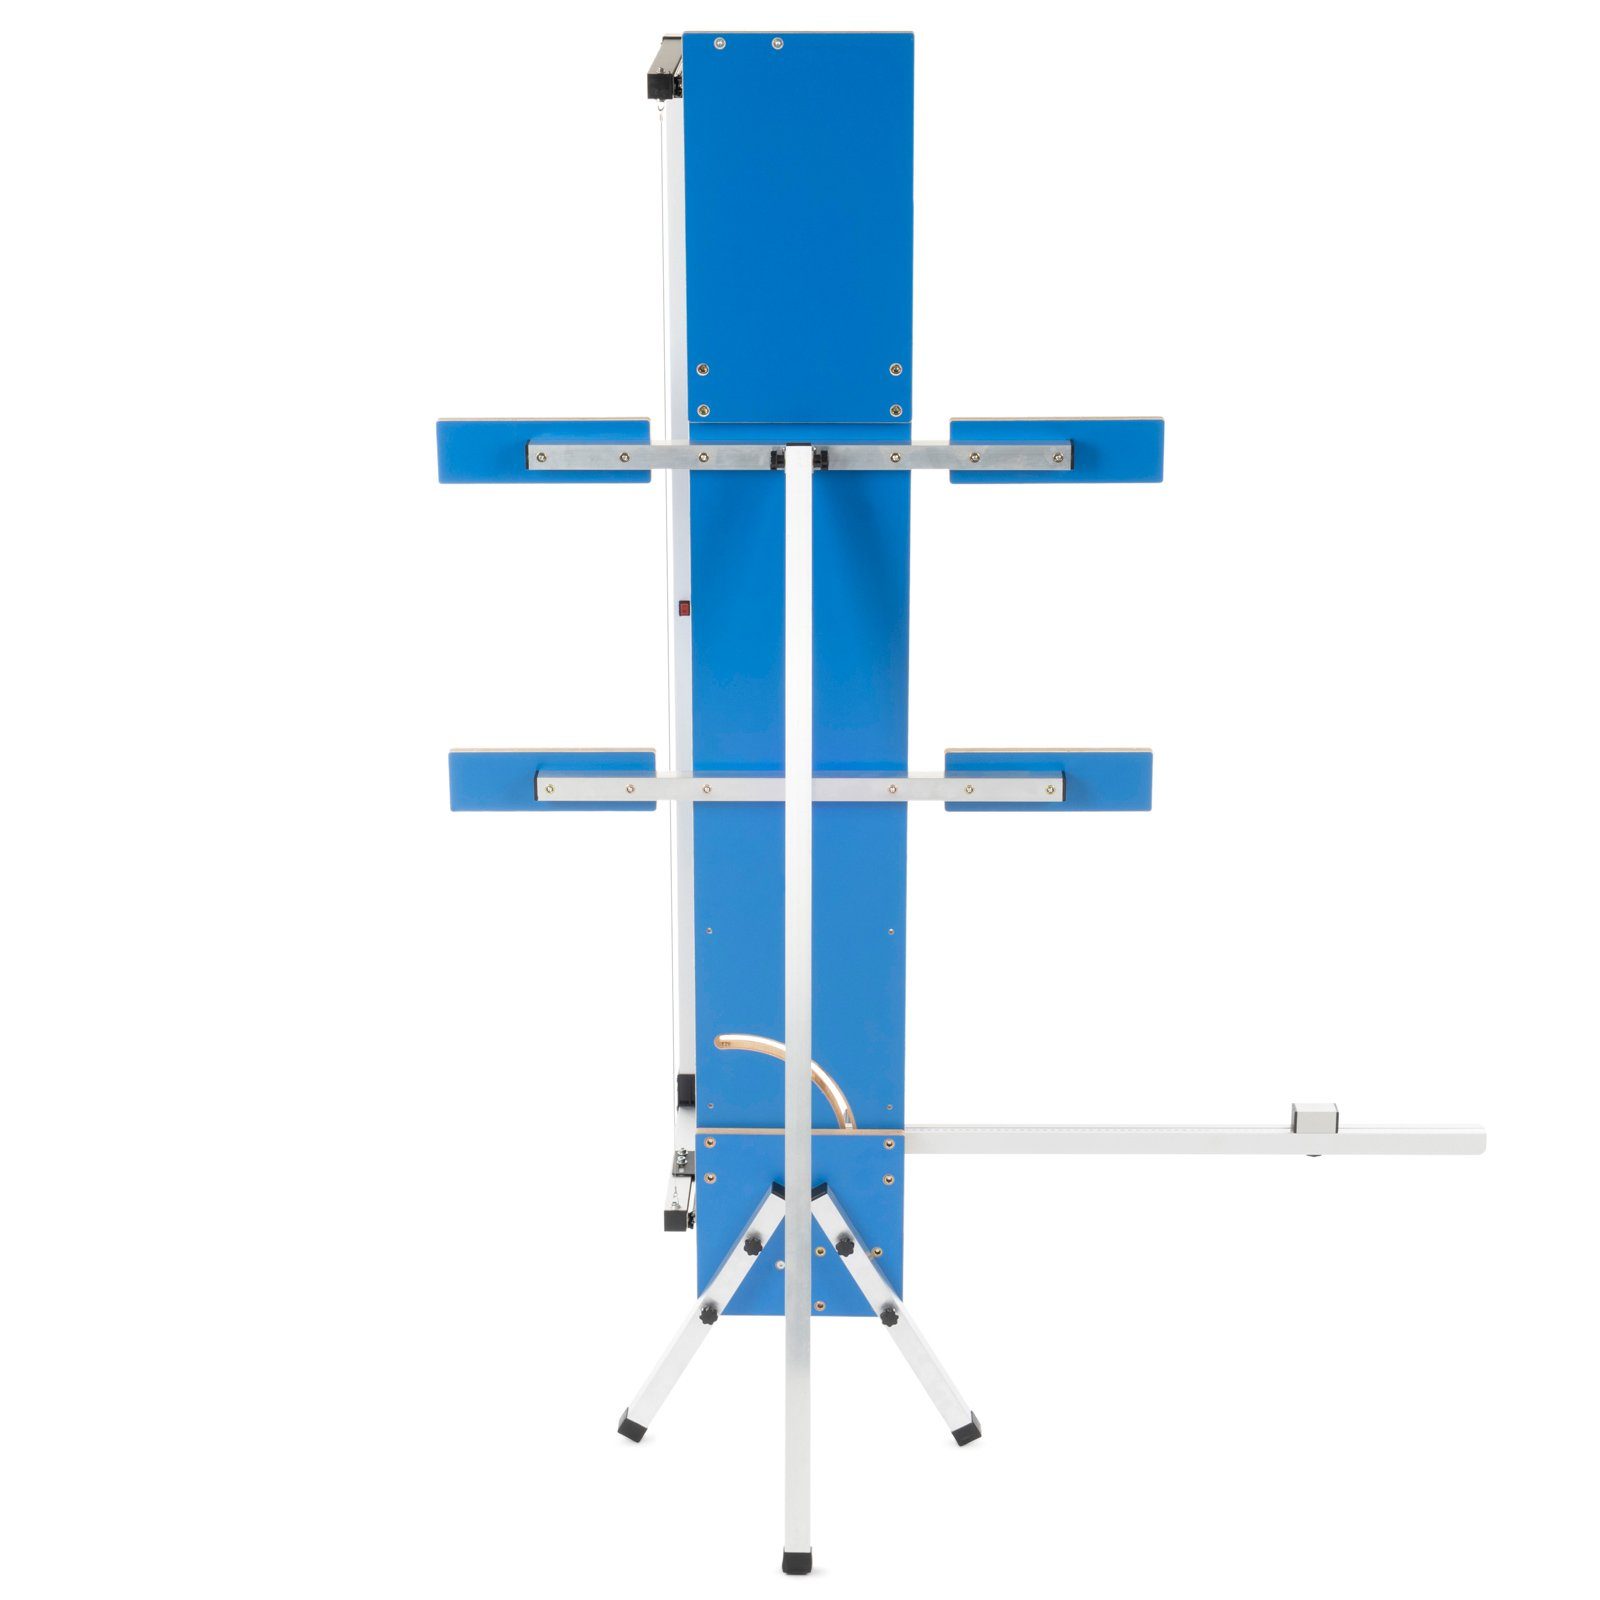 BAUTEC » » Styroporschneider, 10x 5 GAZELLE + Kombi-Set Schneidedraht Schleifraspel Heißdrahtschneider